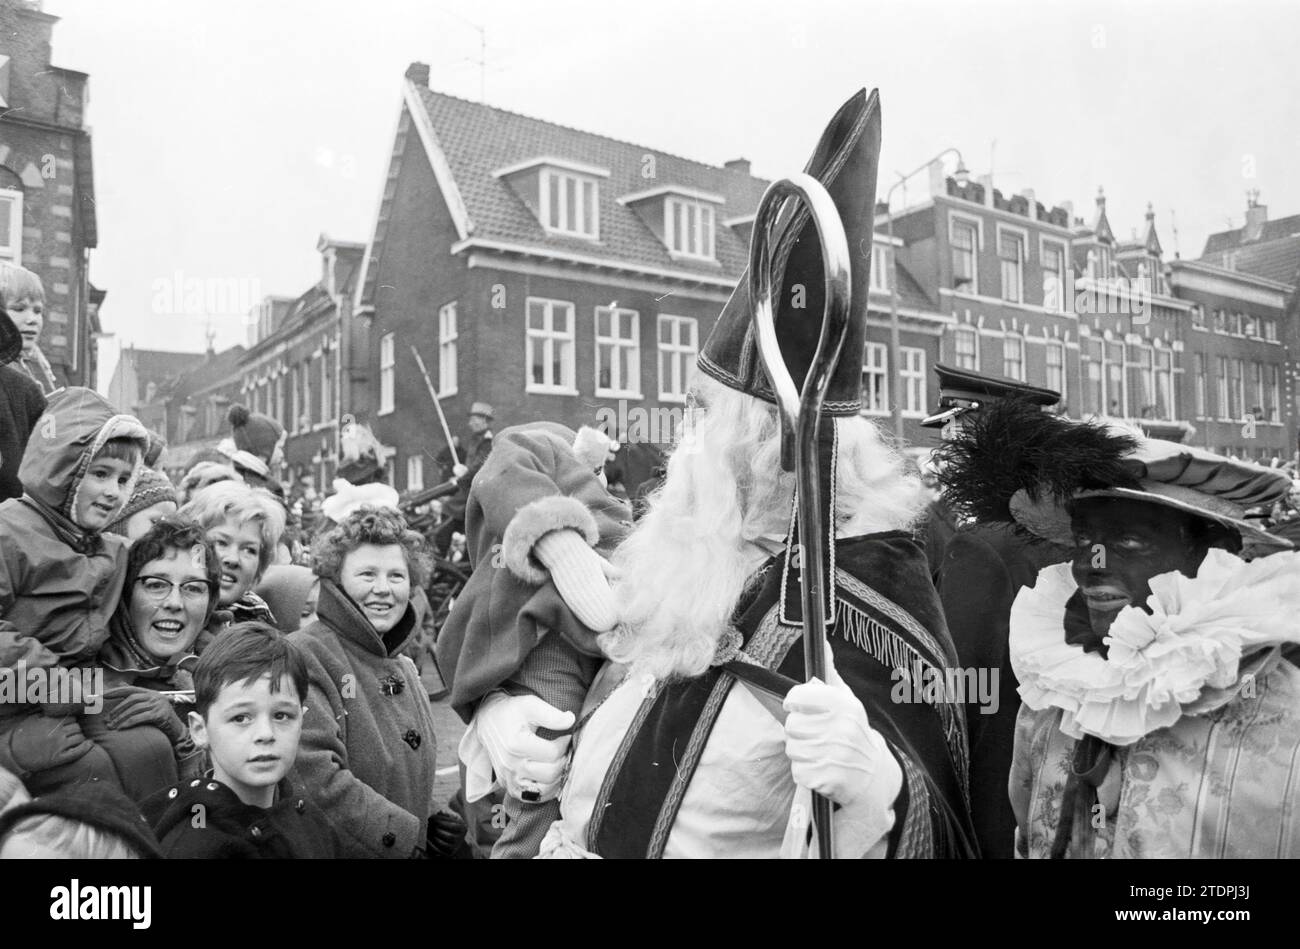 Arrivée de Sinterklaas, Haarlem, Spaarne, pays-Bas, 00-00-1963, Whizgle nouvelles du passé, adaptées à l'avenir. Explorez les récits historiques, l'image de l'agence néerlandaise avec une perspective moderne, comblant le fossé entre les événements d'hier et les perspectives de demain. Un voyage intemporel façonnant les histoires qui façonnent notre avenir Banque D'Images